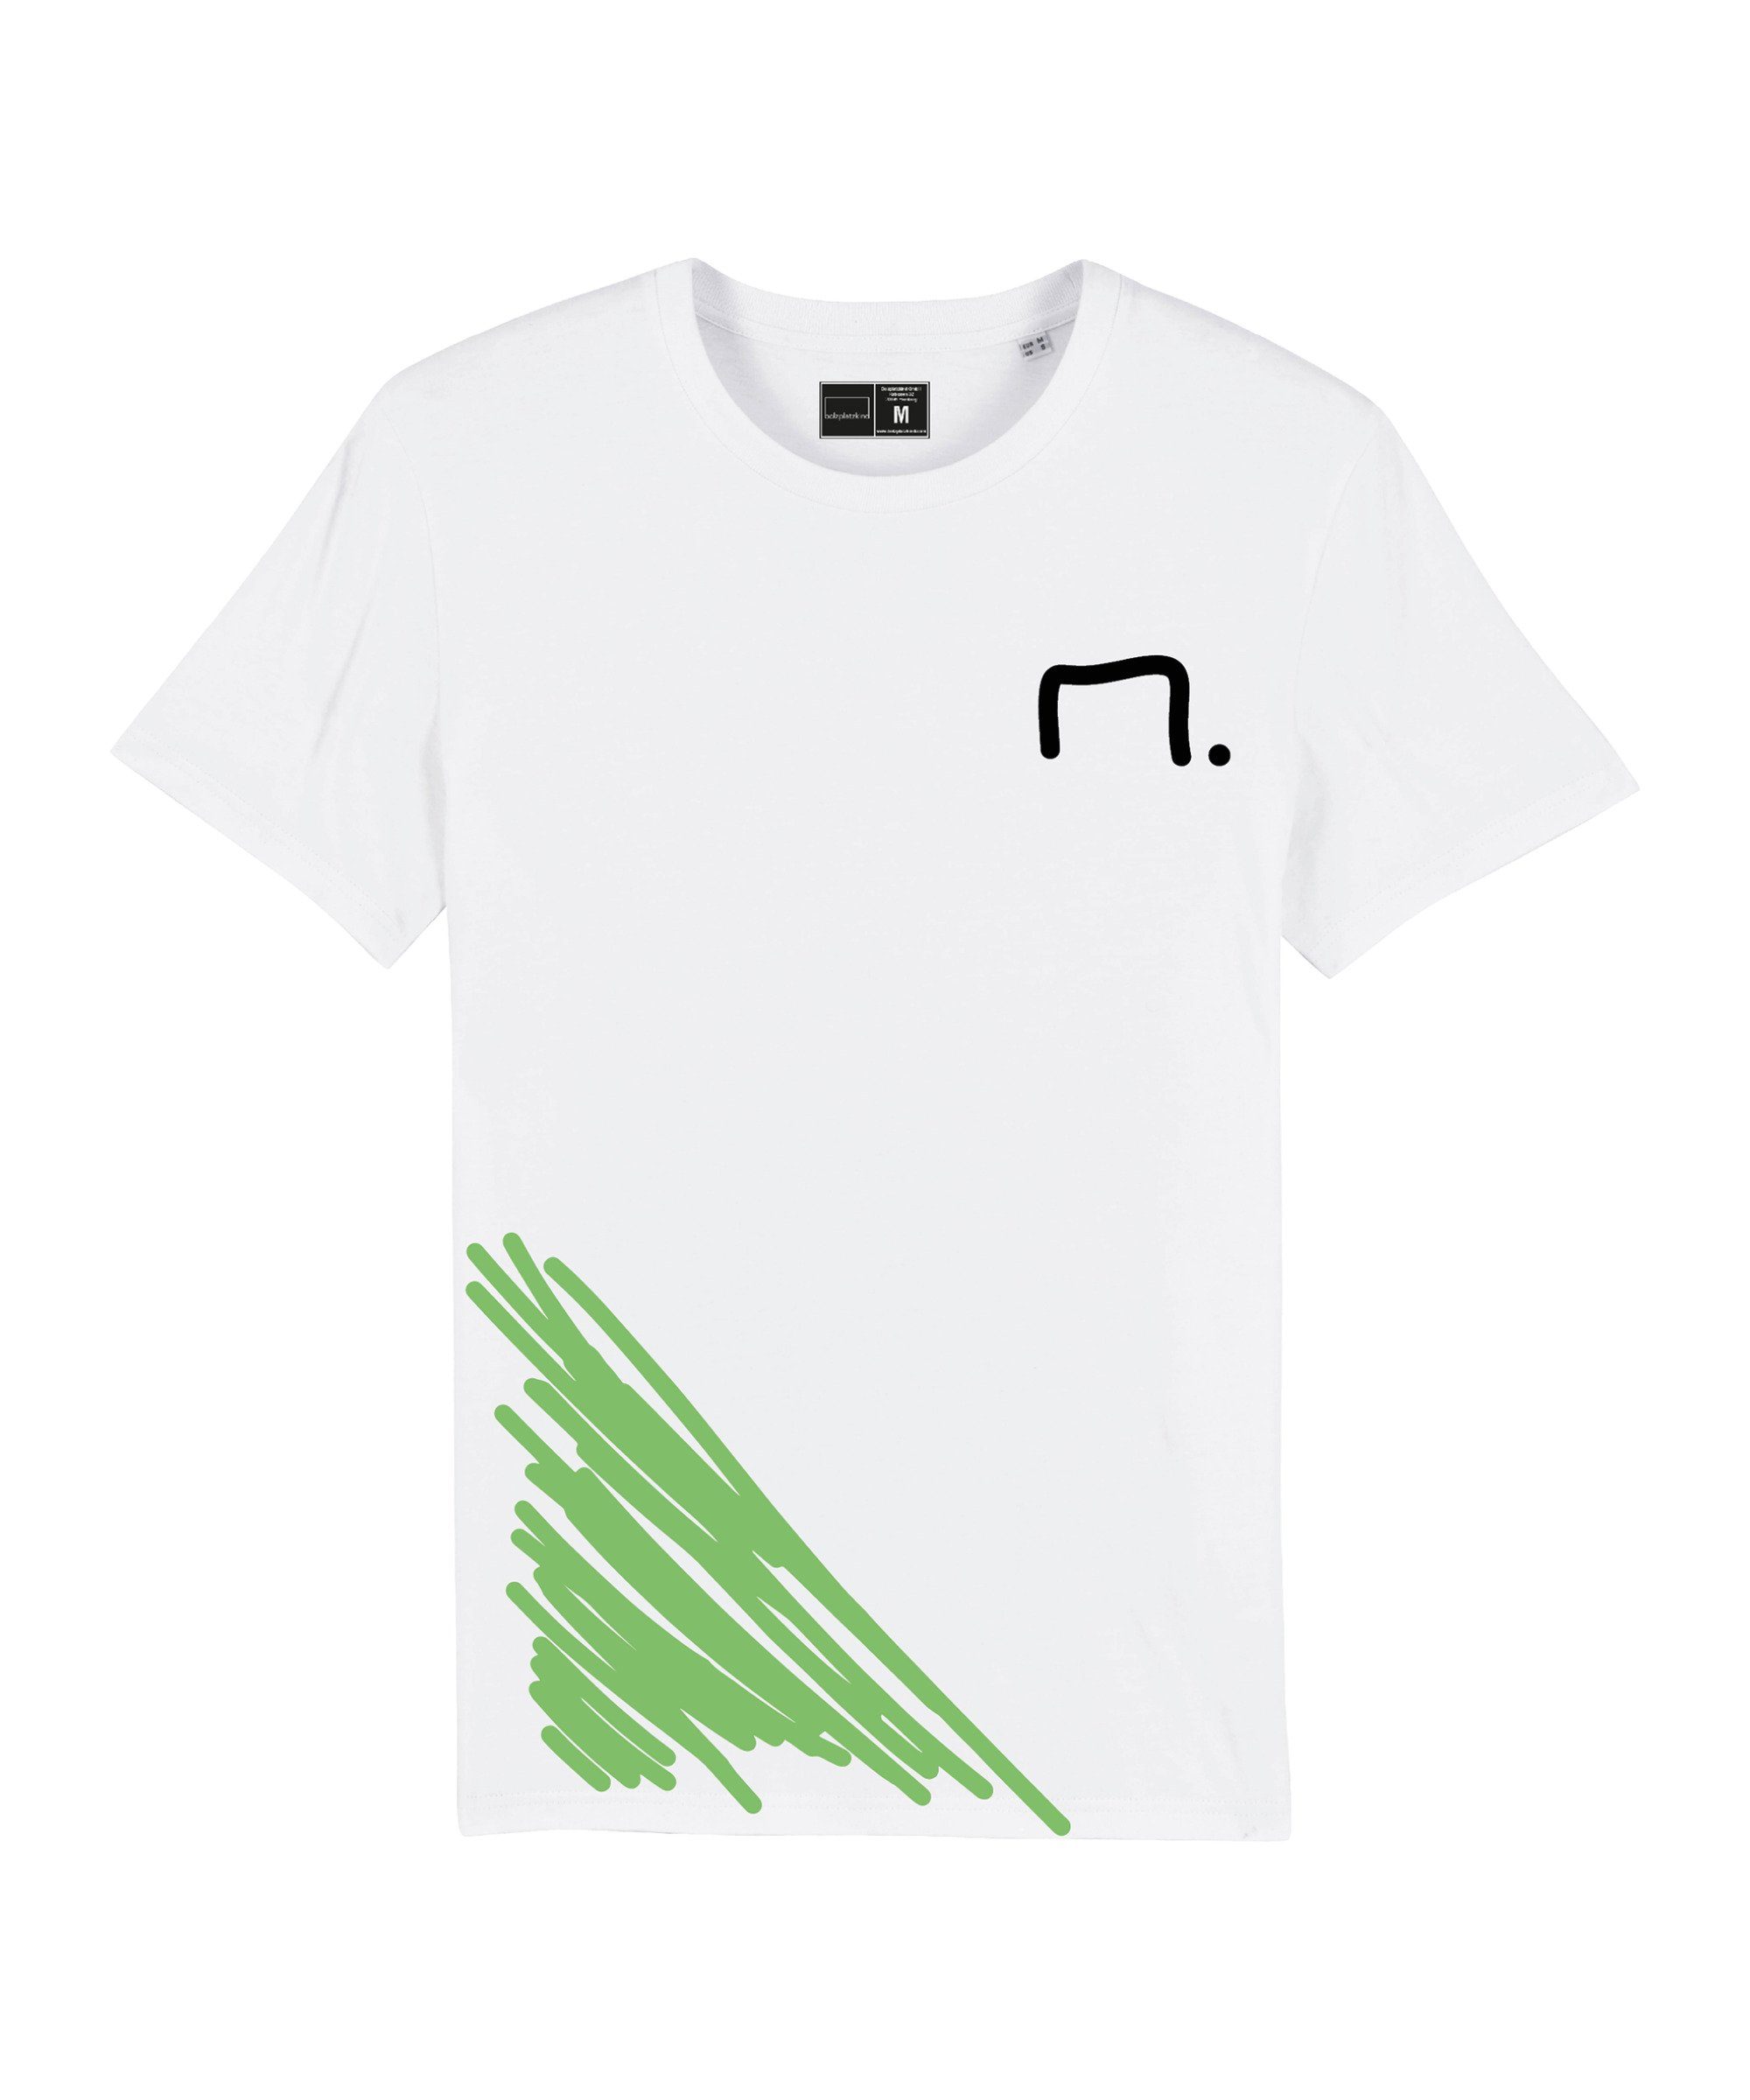 Bolzplatzkind T-Shirt "Field" T-Shirt Nachhaltiges Produkt